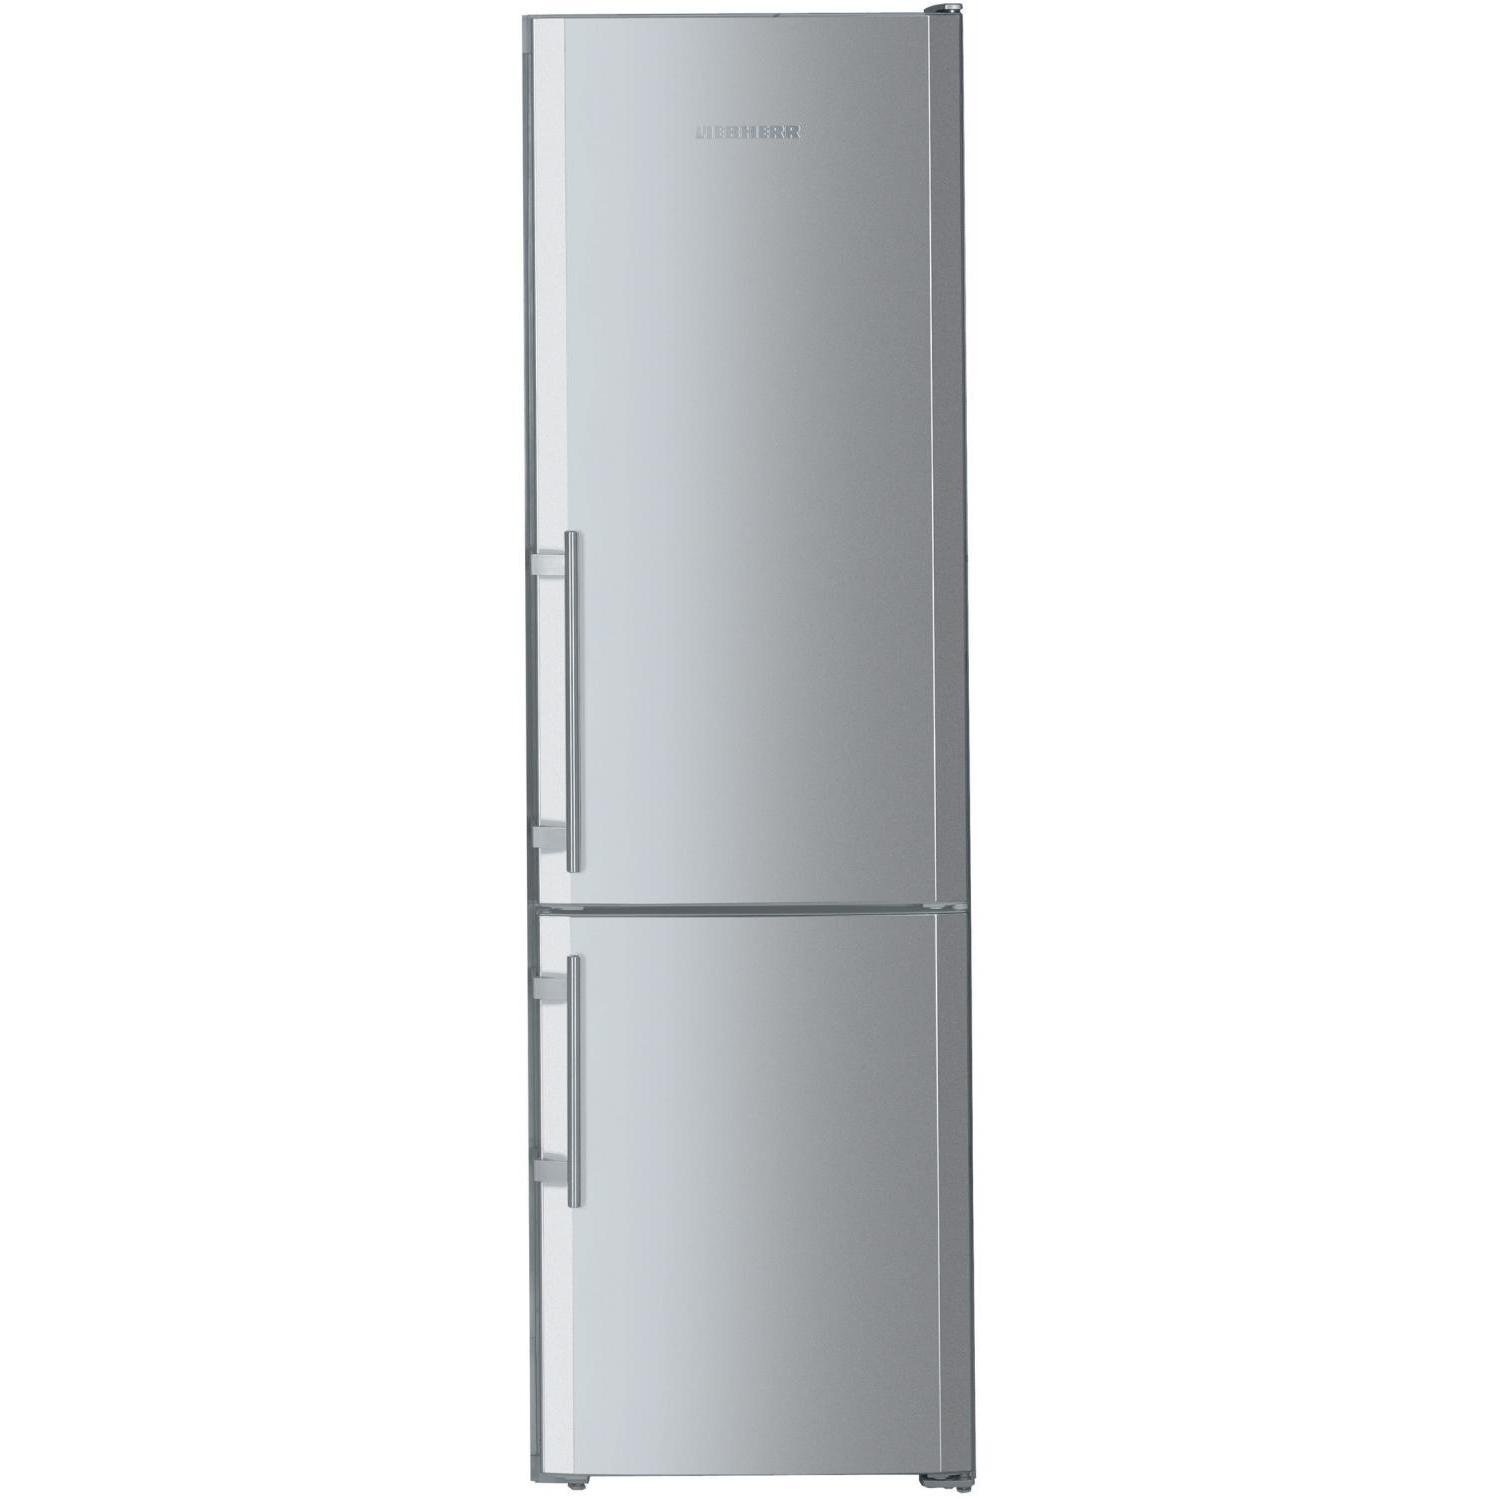 Узкие холодильники до 55 см. Холодильник Liebherr 55 см. Холодильник Liebherr двухкамерный высота 180 серебристый. Холодильник шириной 55 см двухкамерный Либхер бежевый. Холодильник Liebherr 55 см ширина.